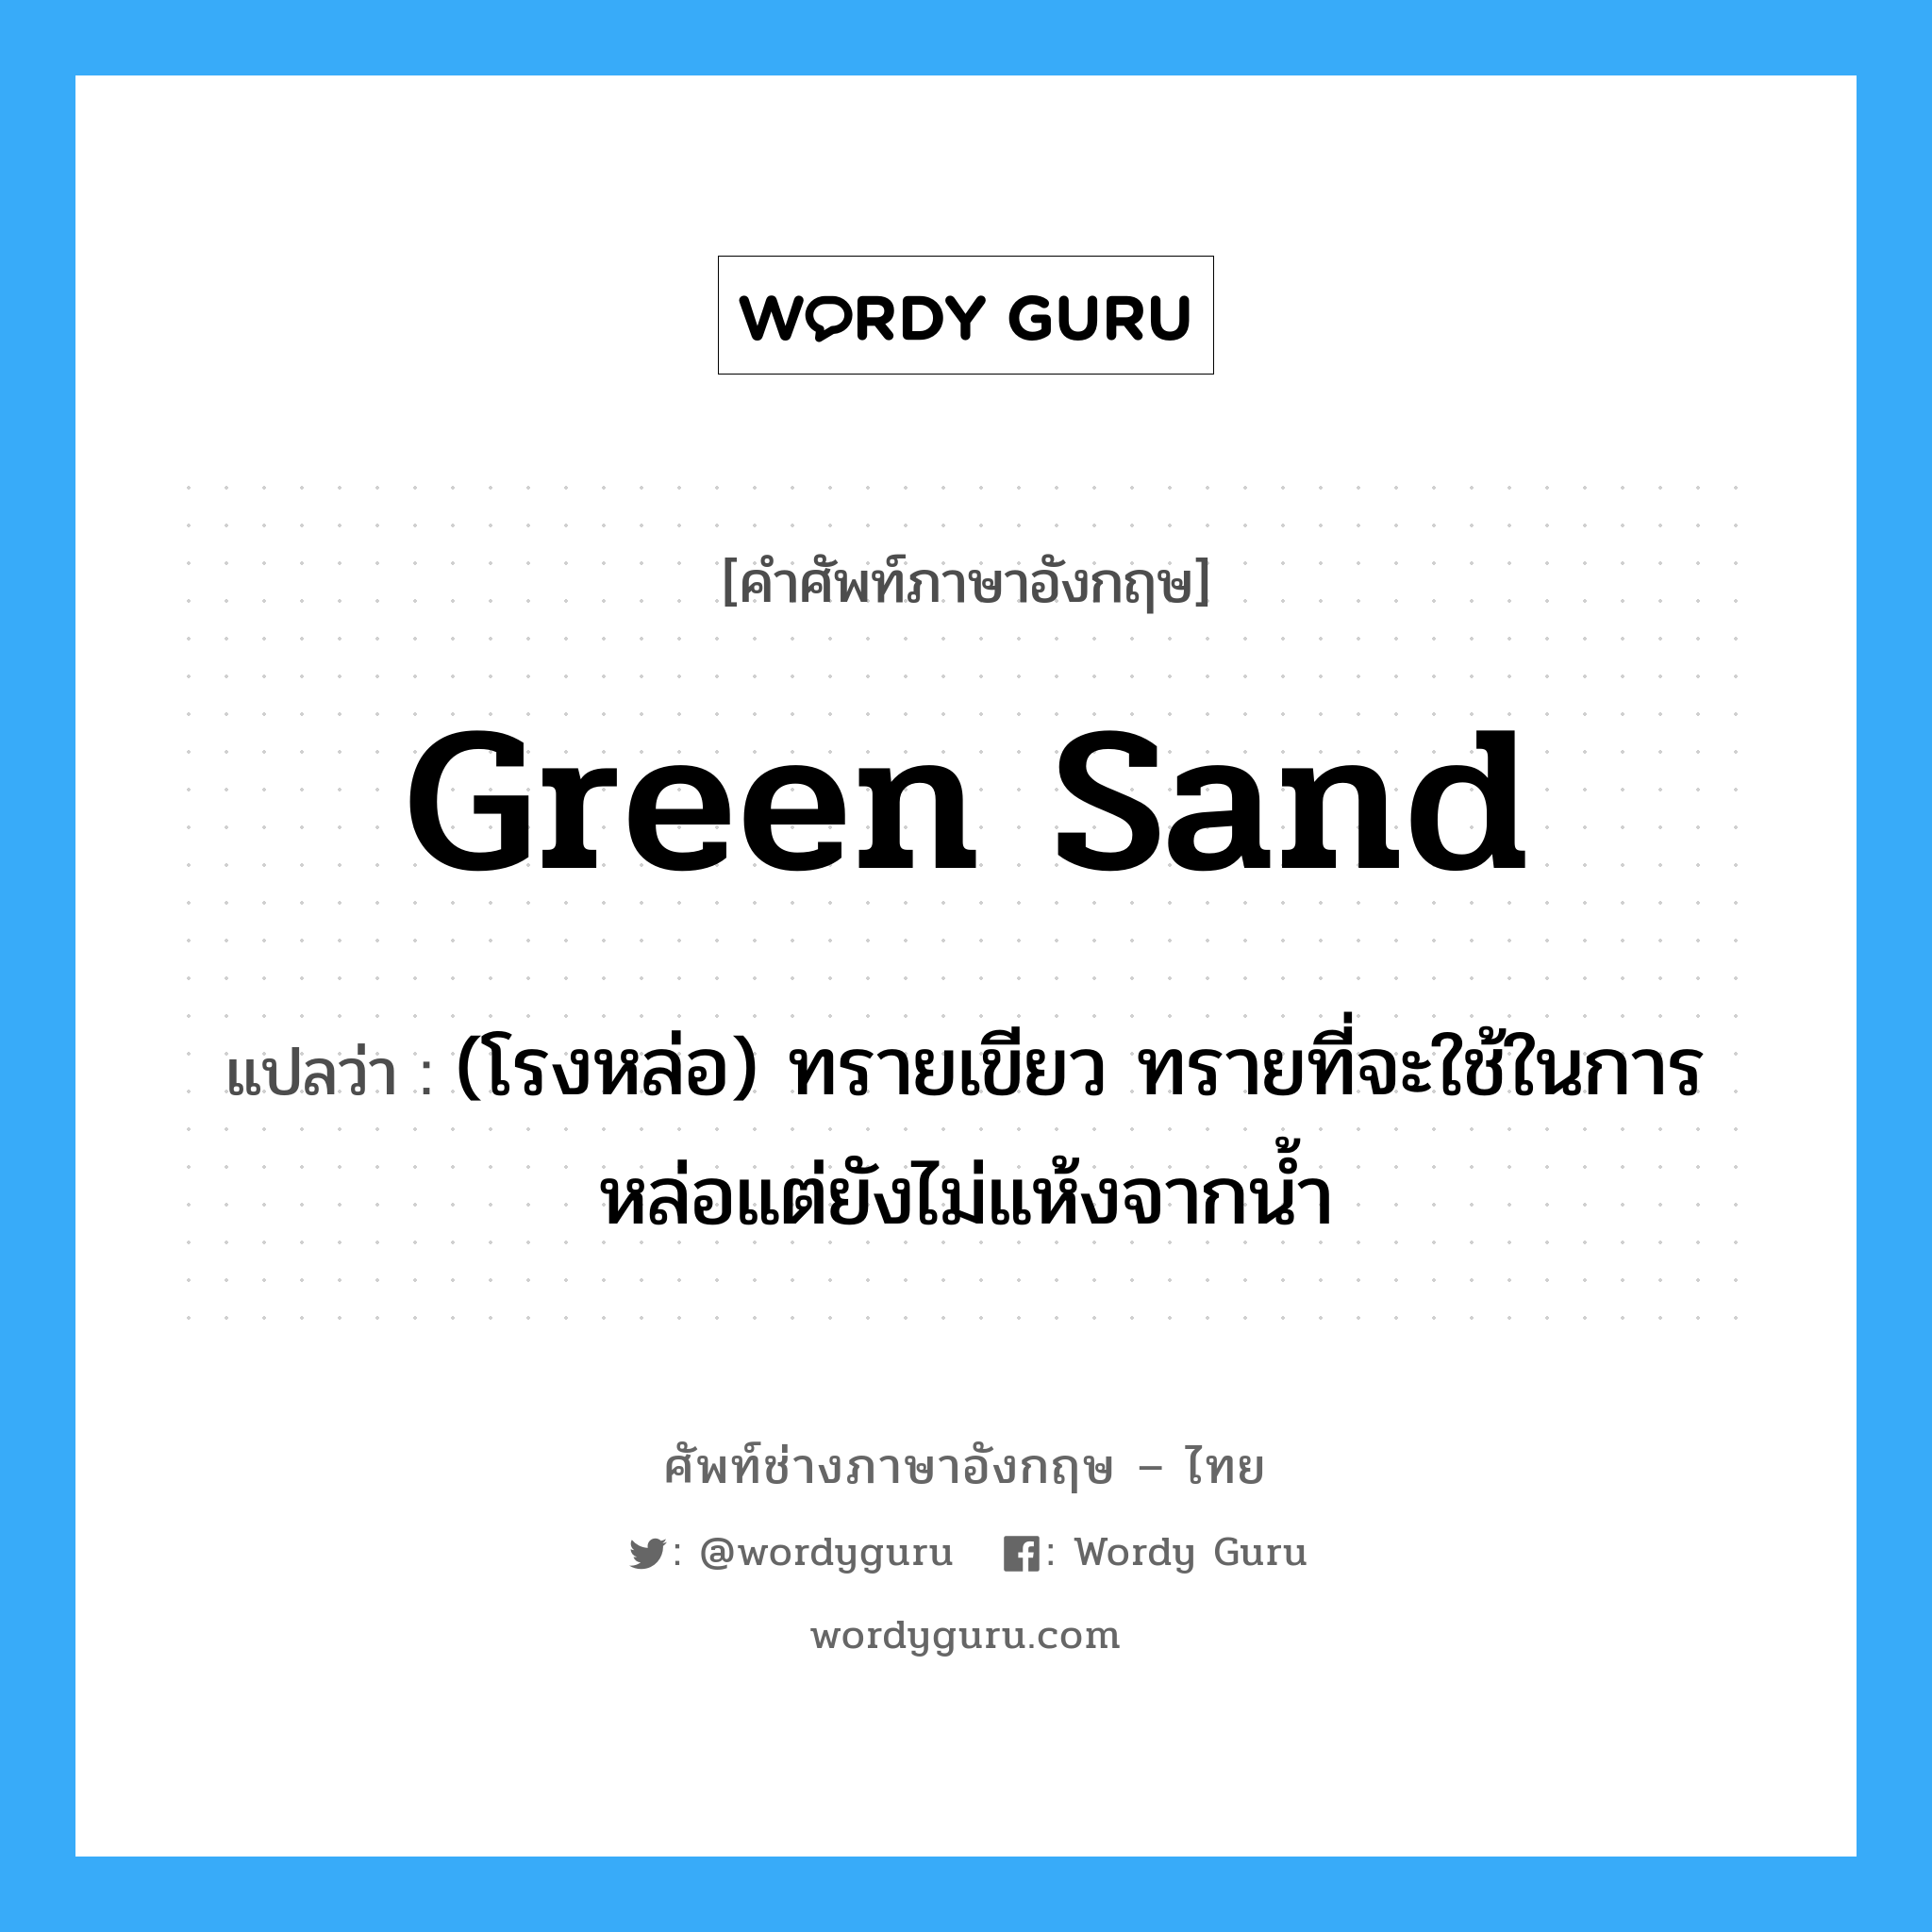 green sand แปลว่า?, คำศัพท์ช่างภาษาอังกฤษ - ไทย green sand คำศัพท์ภาษาอังกฤษ green sand แปลว่า (โรงหล่อ) ทรายเขียว ทรายที่จะใช้ในการหล่อแต่ยังไม่แห้งจากน้ำ